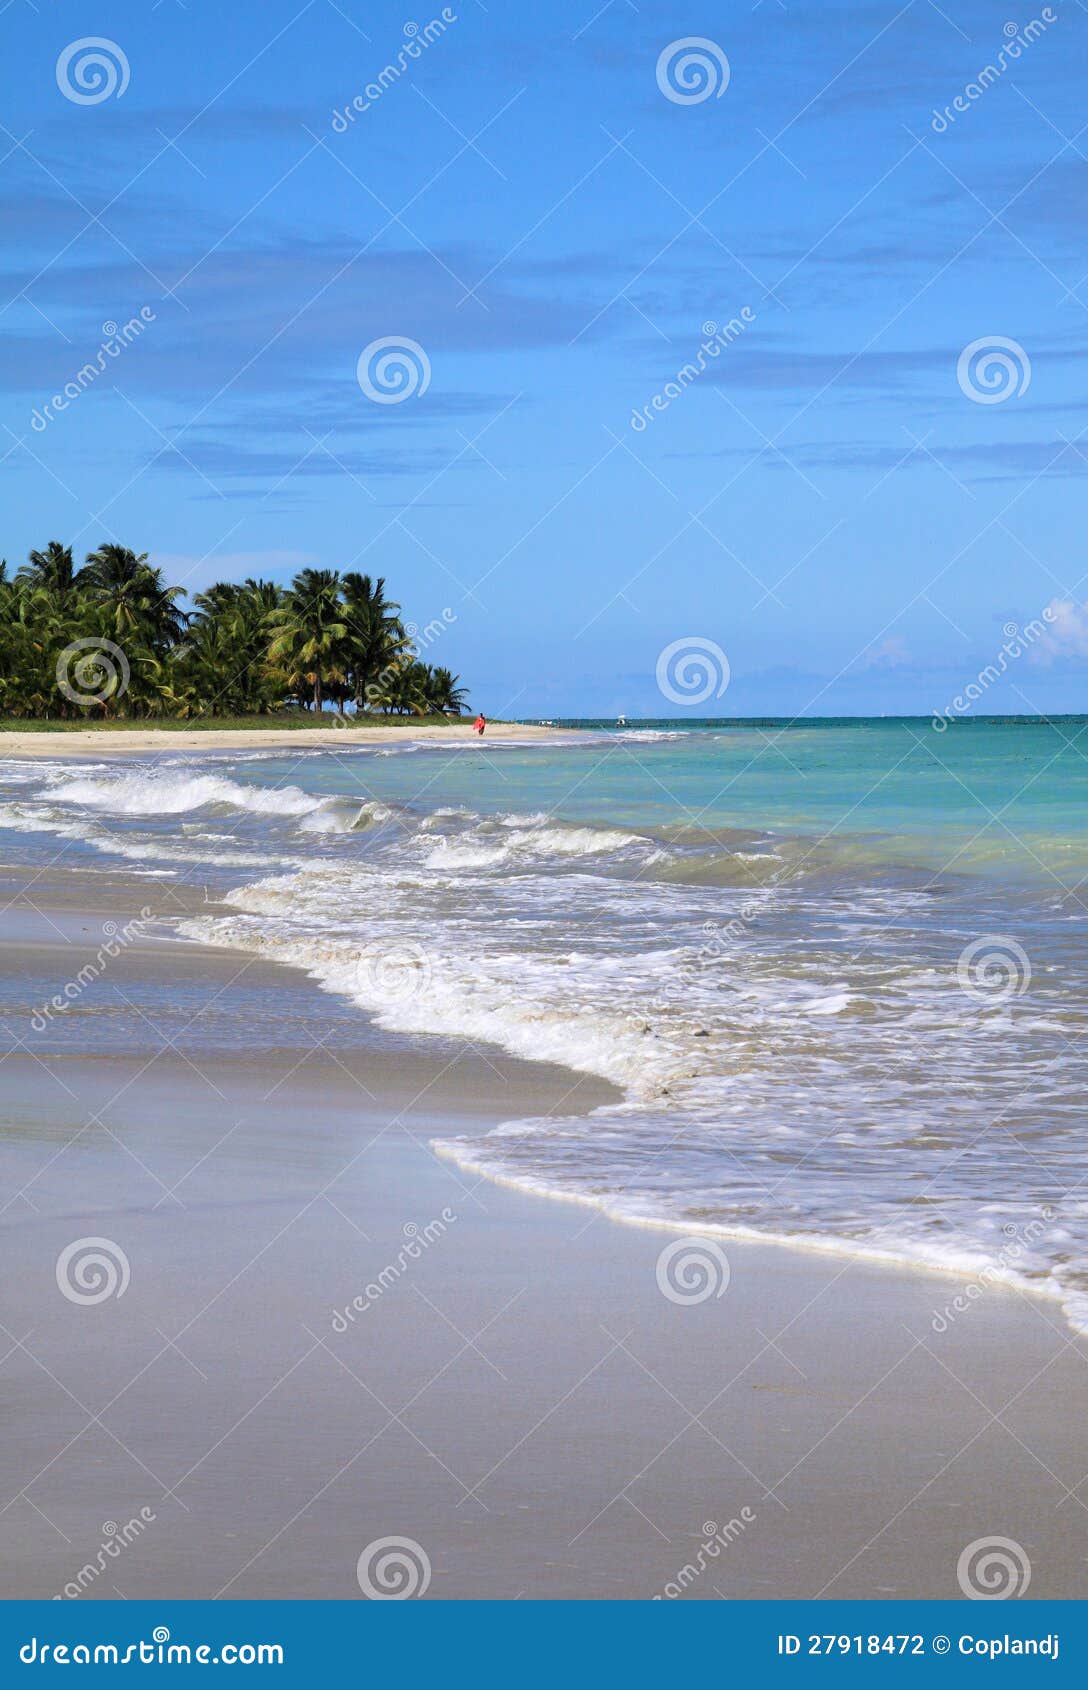 brazil, alagoas, maceio beach